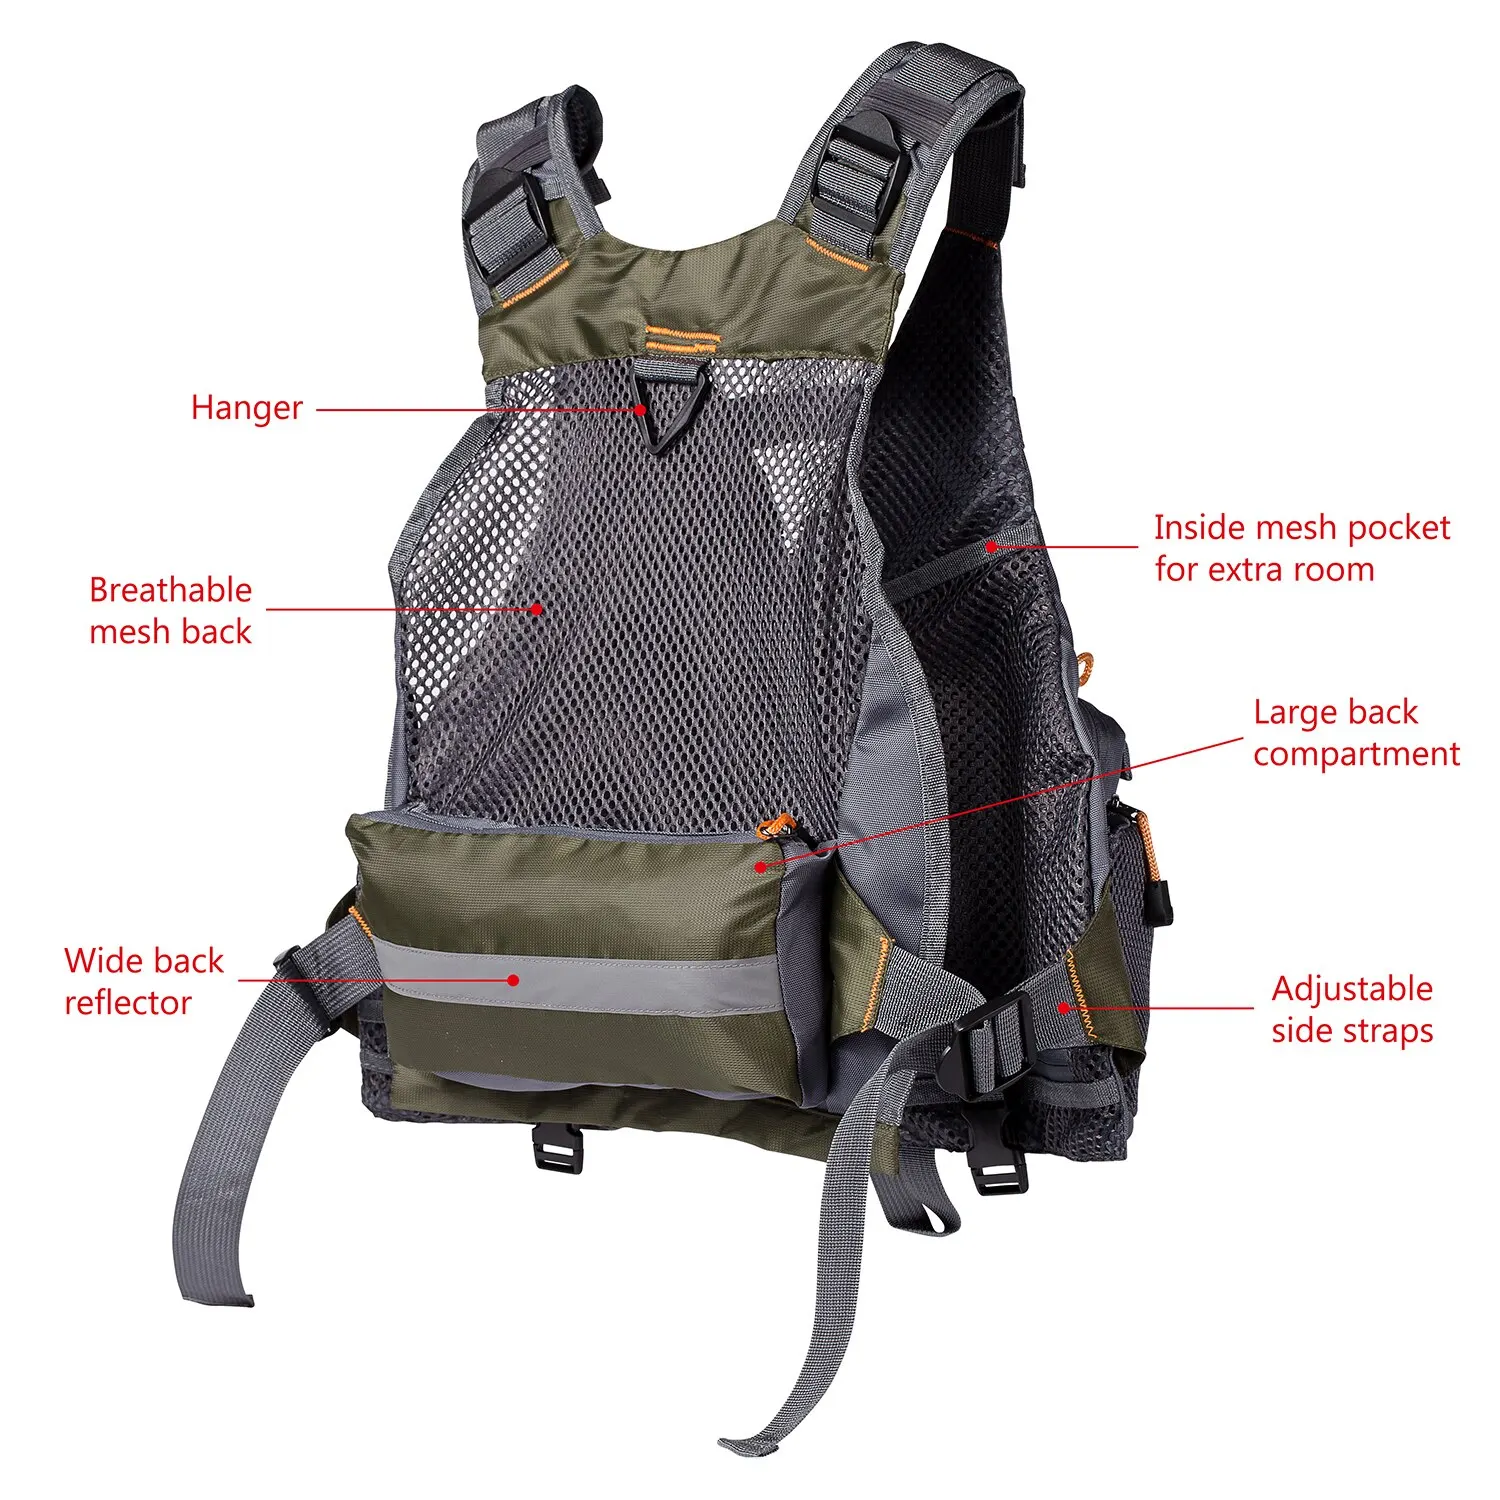 Bassdash Backpack Straps Replacement Adjustable Padded Shoulder Adult, Black